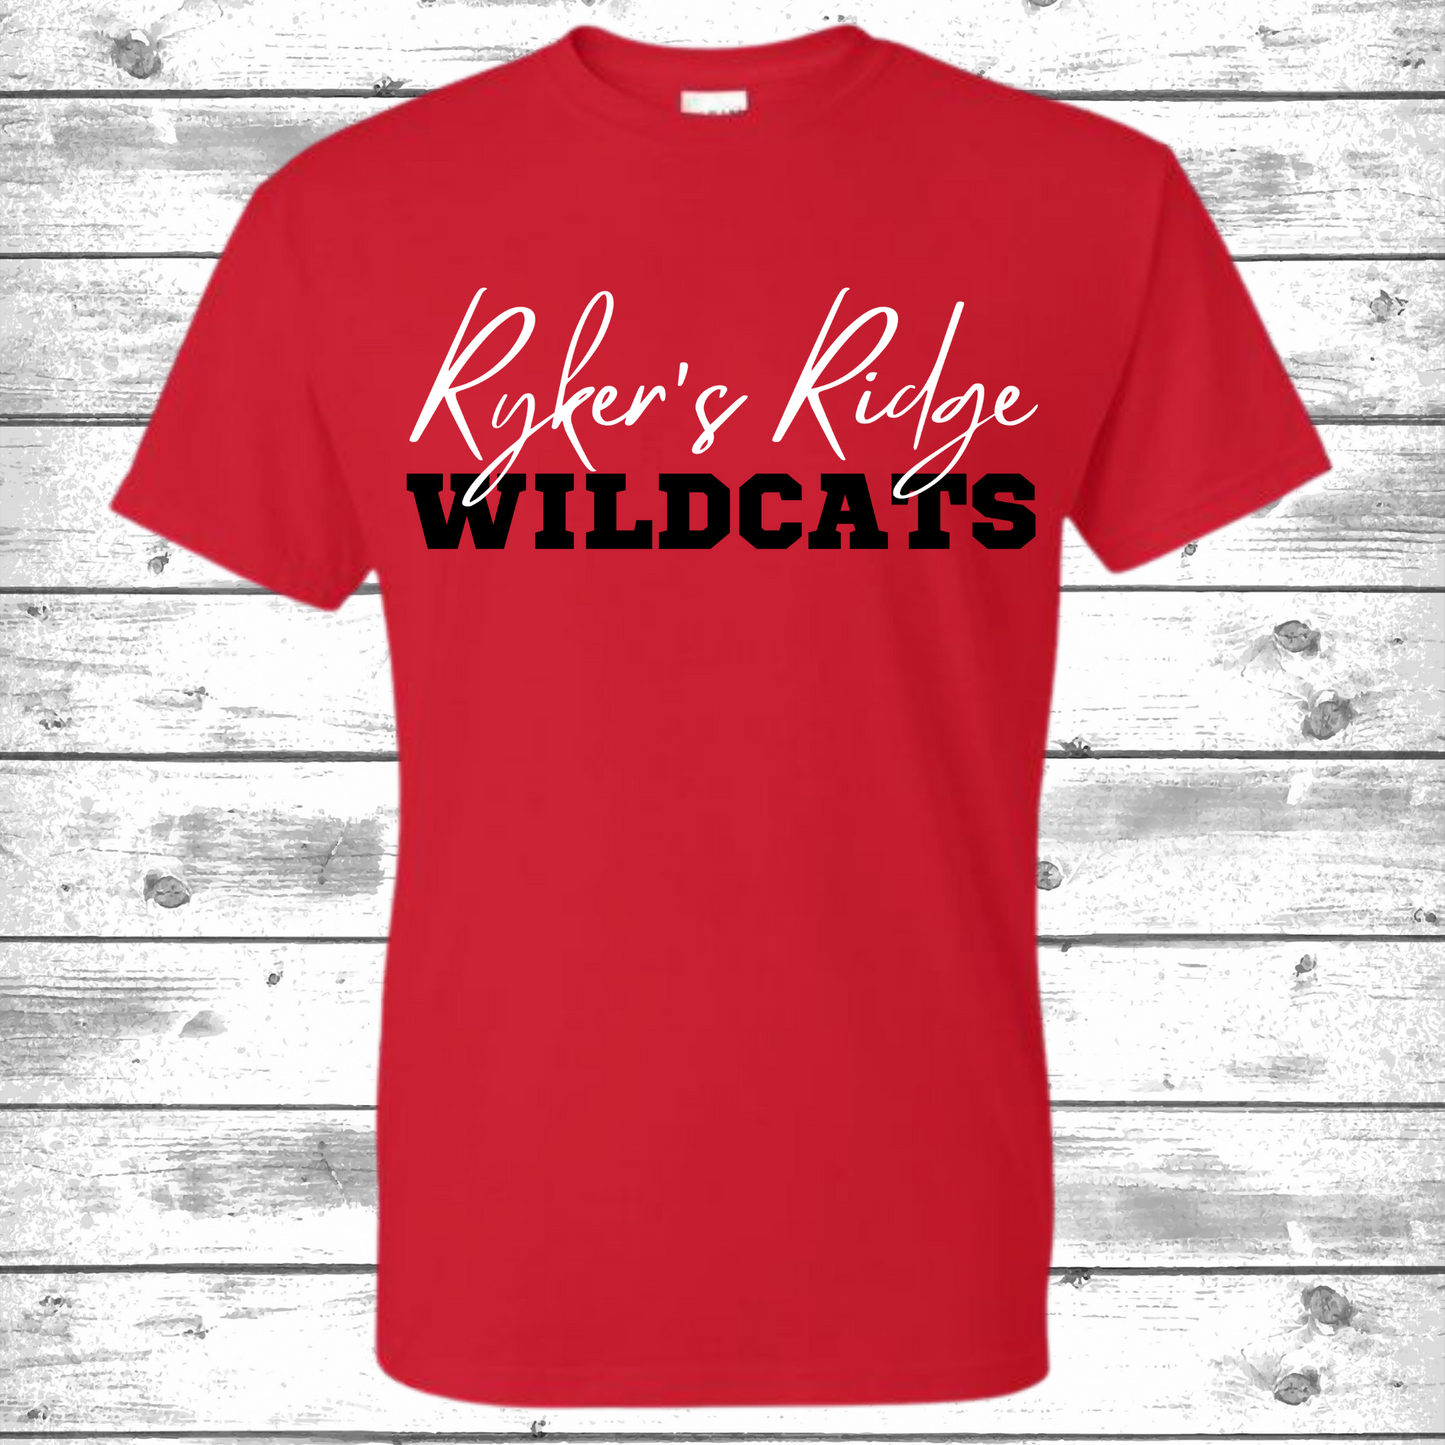 Rykers' Ridge Wildcats.1